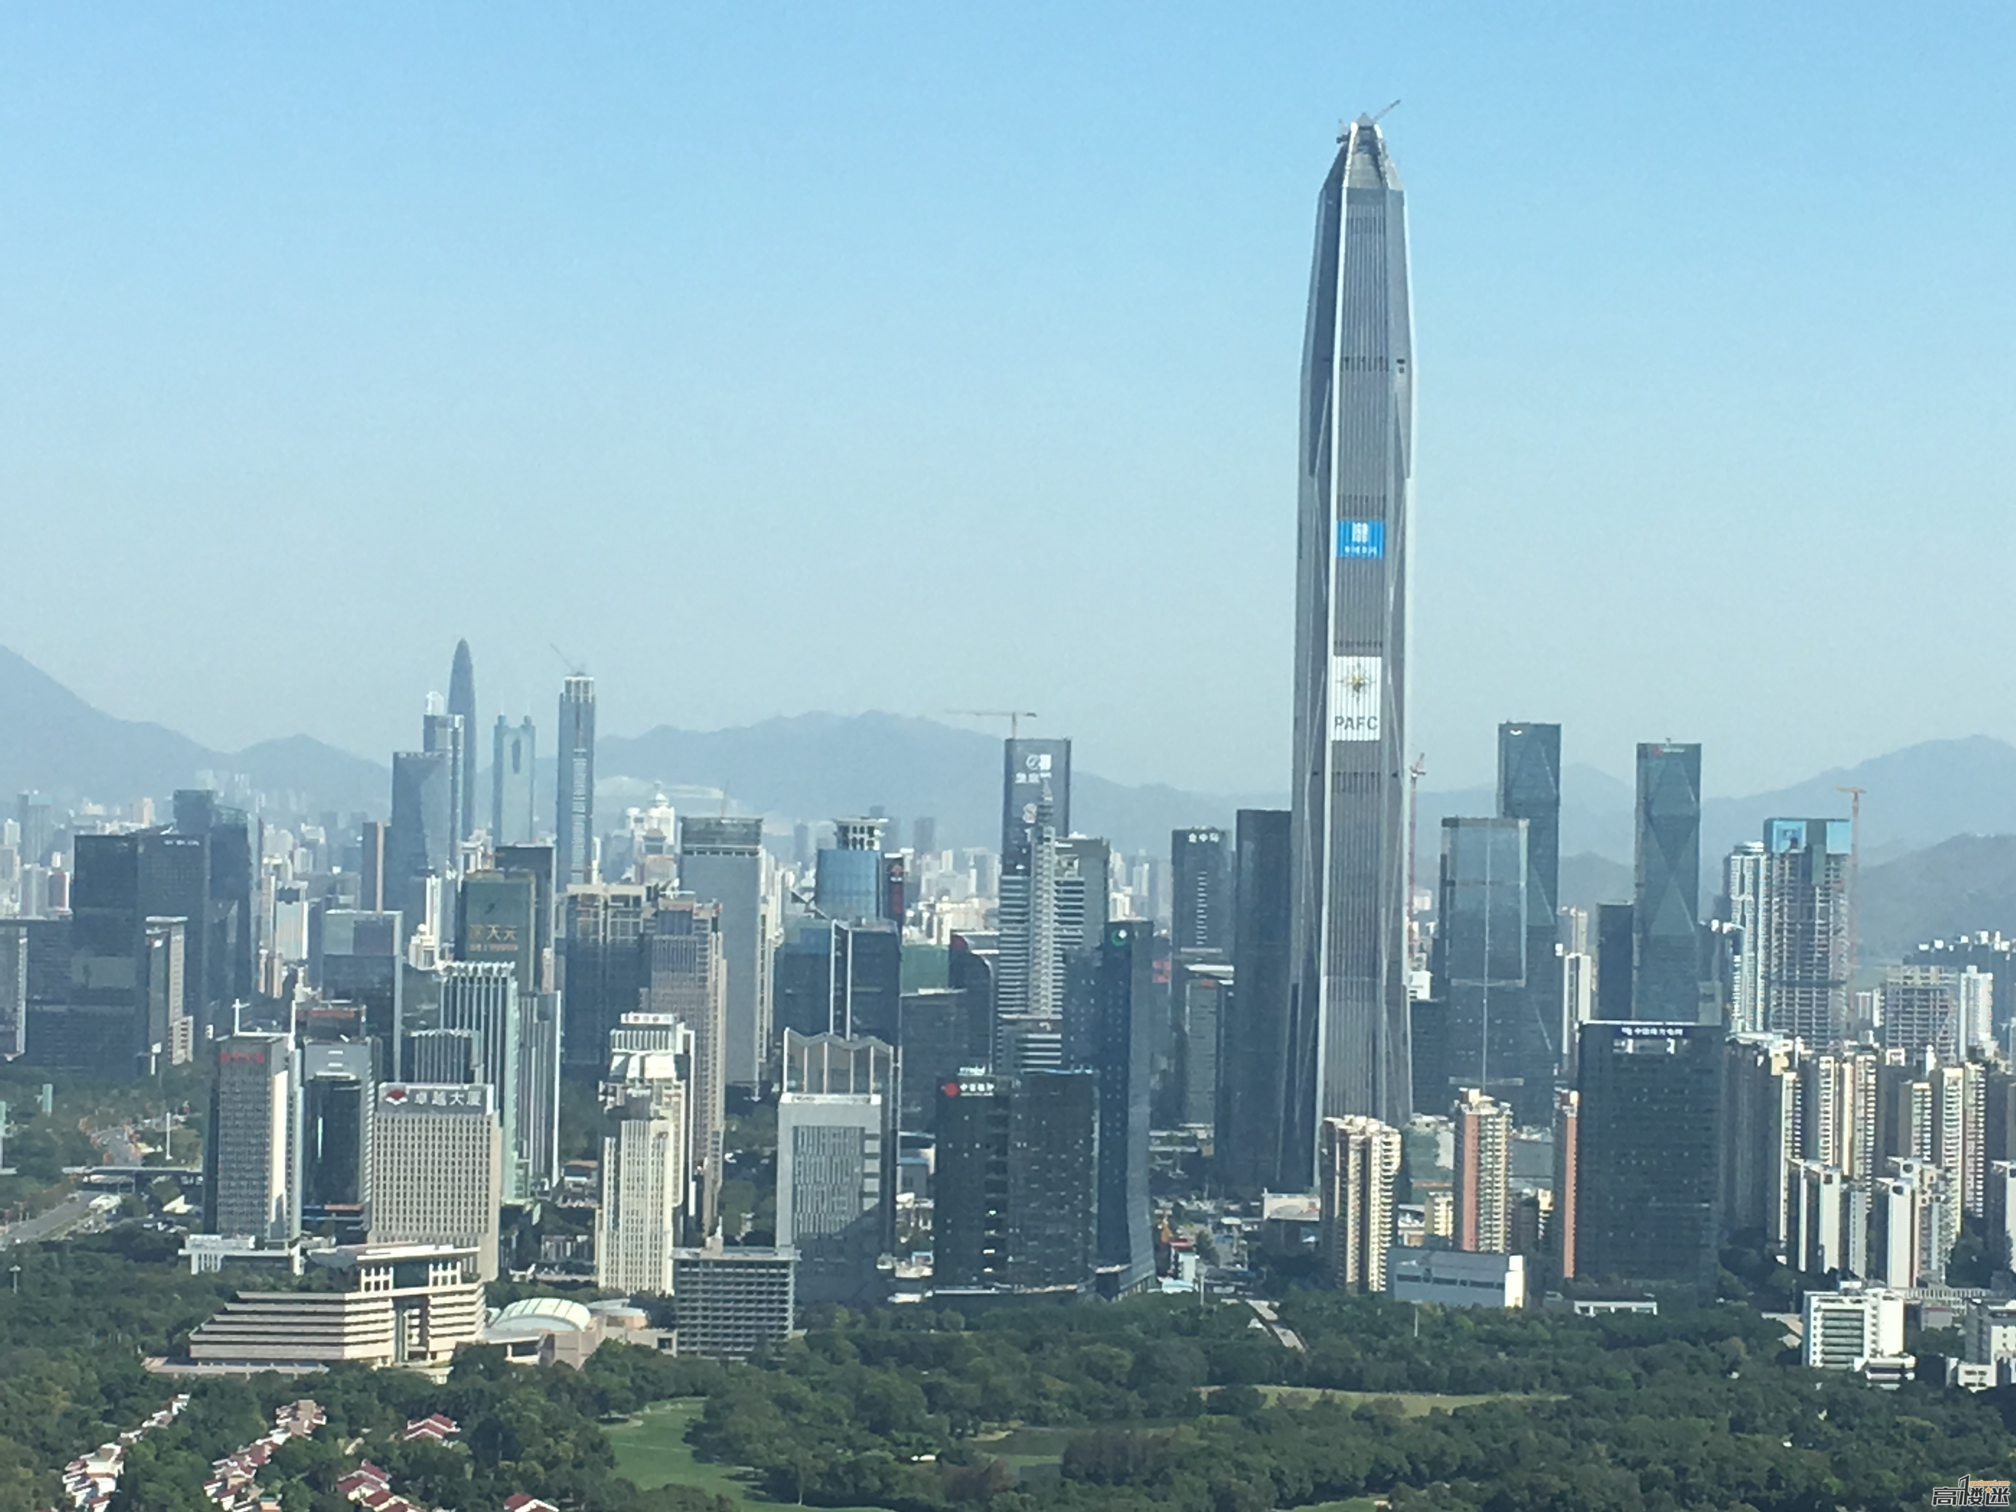 深圳,为什么必成中国第一大城市!?